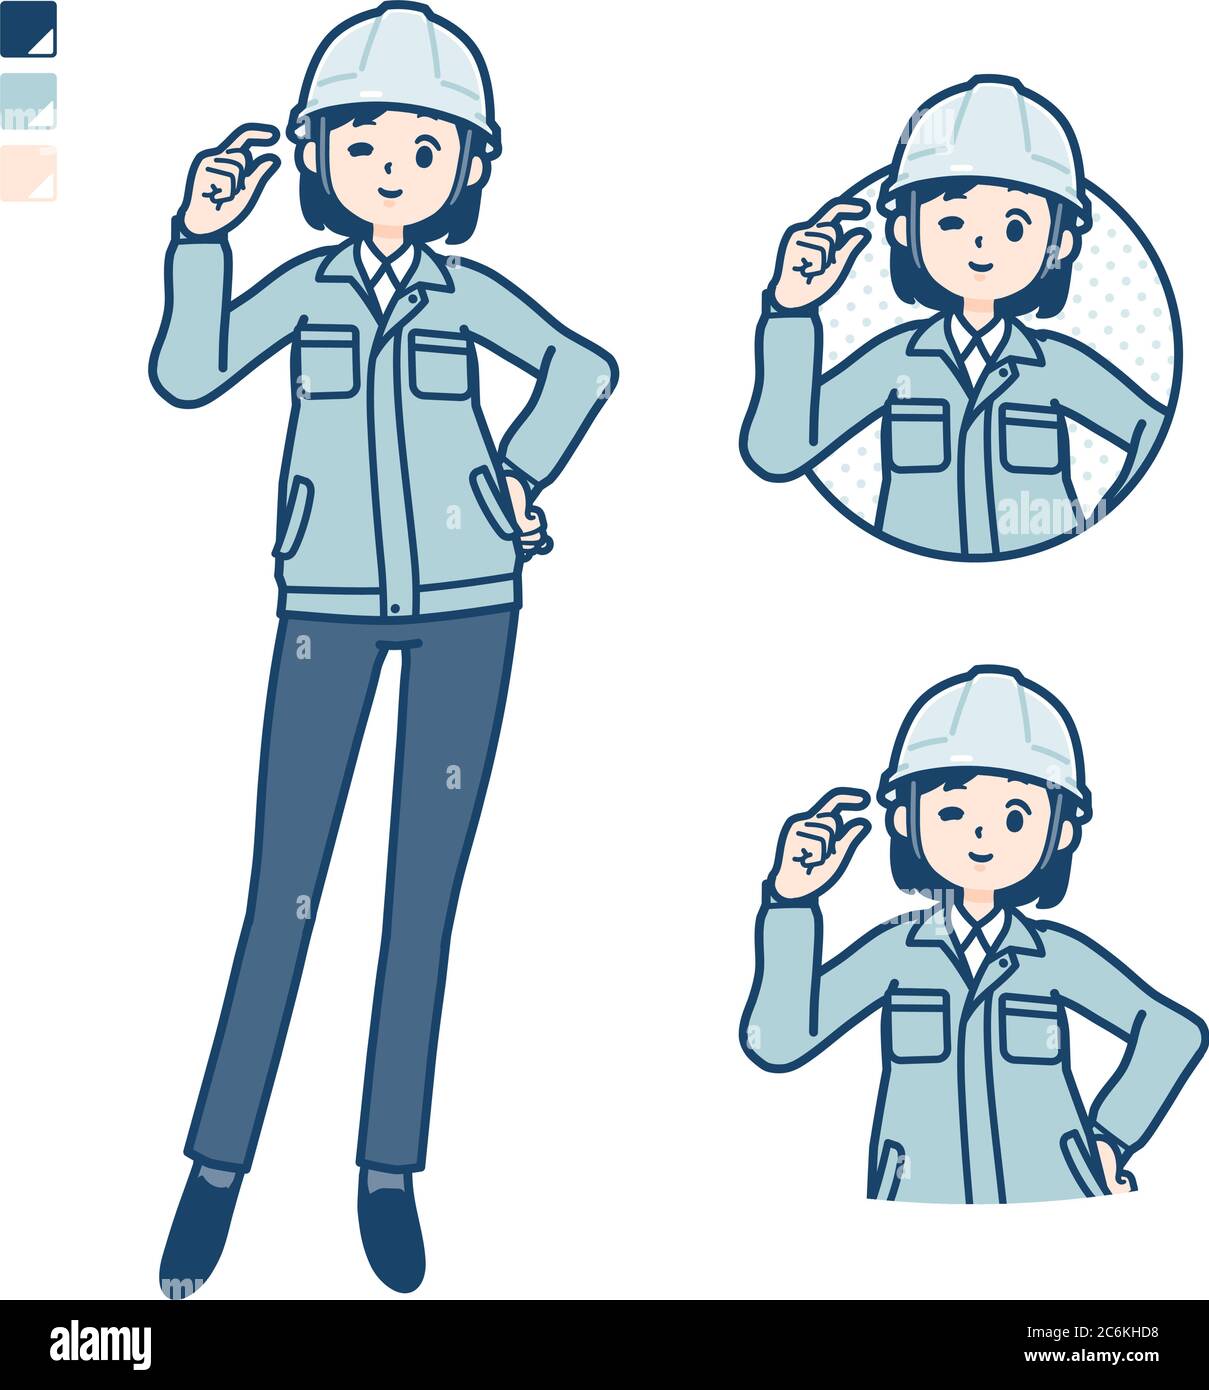 Una donna che indossa un abbigliamento da lavoro con solo un po' di immagini di segni. È arte vettoriale, quindi è facile da modificare. Illustrazione Vettoriale